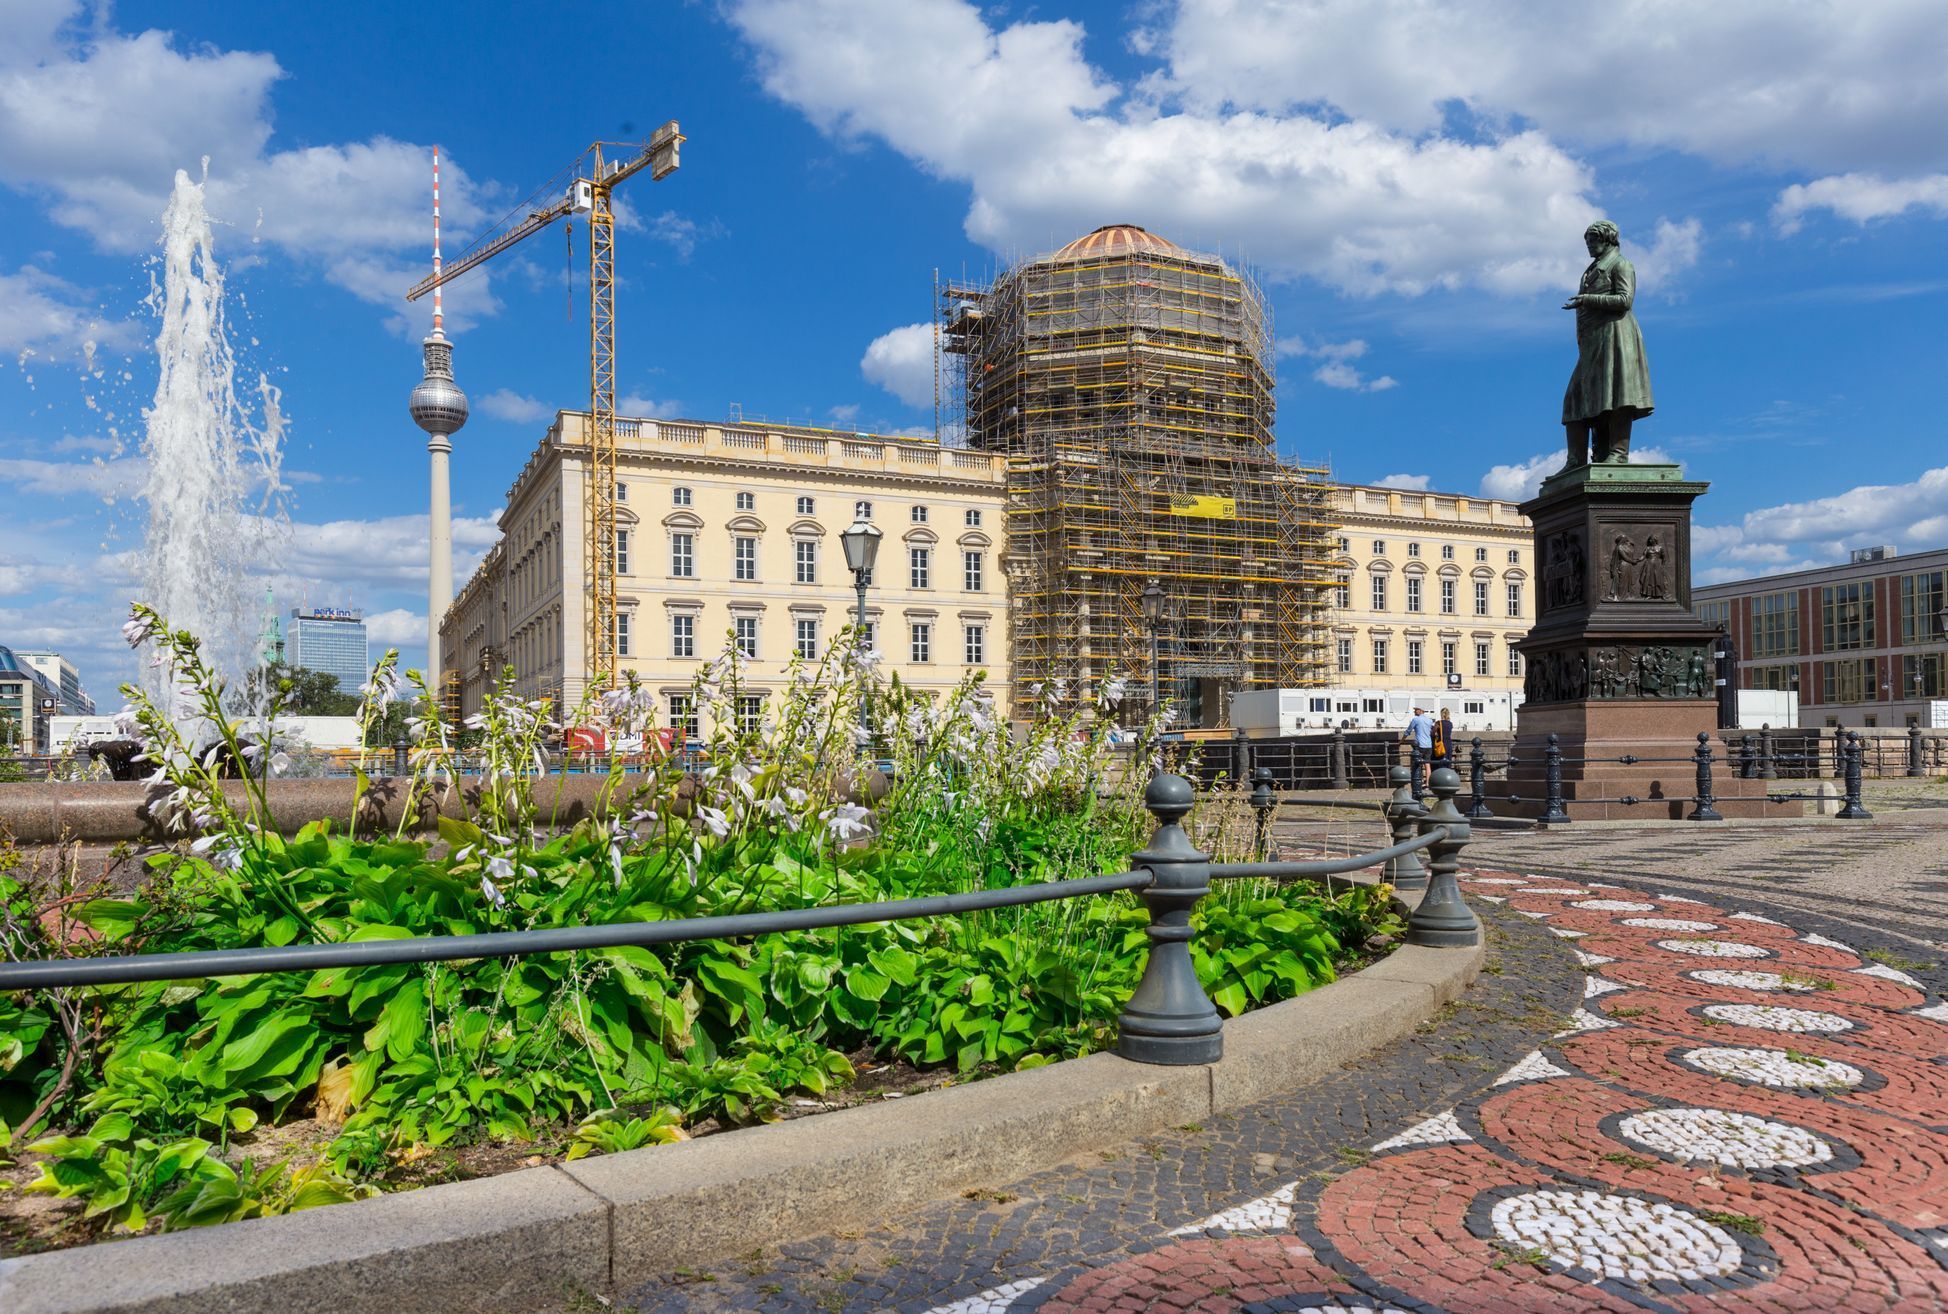 Nově vybudovaný městský zámek v Berlíně, někdejší sídlo císaře, budoucí galerie.